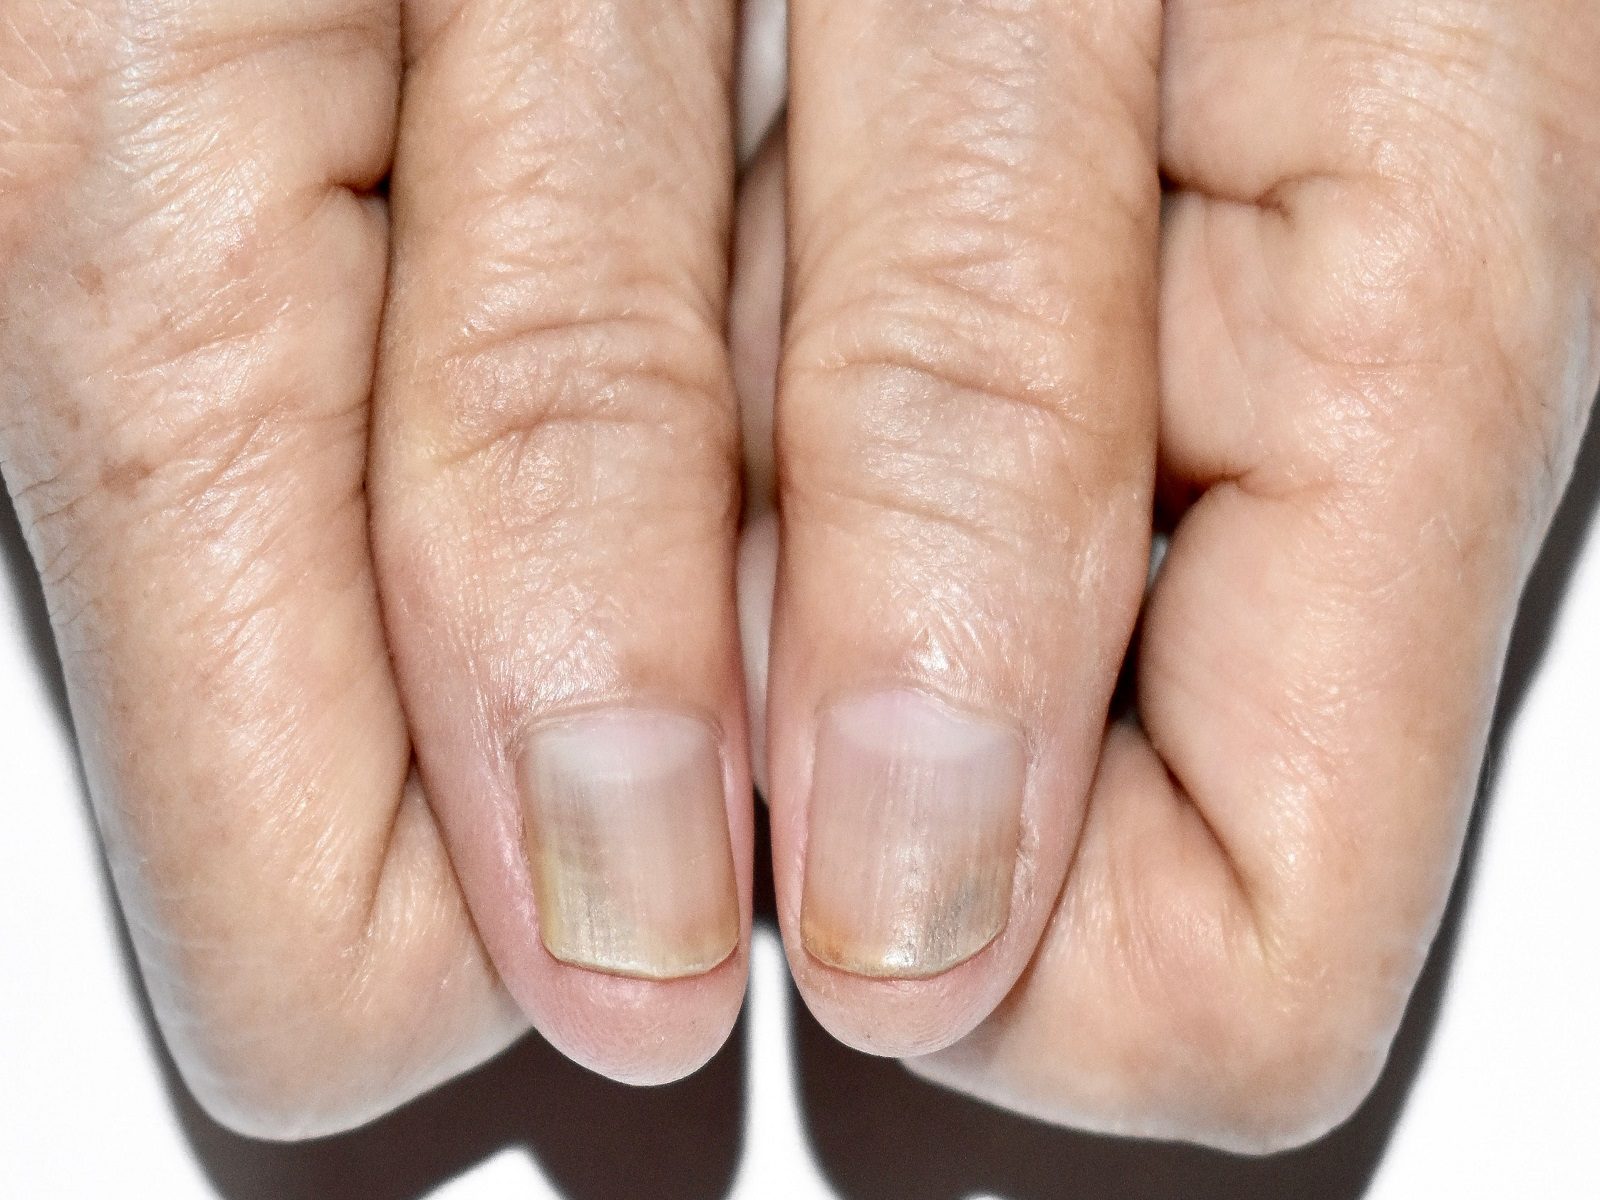 Nail Abnormalities Such changes nails indicate disease know the symptoms  and methods of prevention- नाखूनों में इस तरह के बदलाव देते हैं बीमारी का  संकेत, जानिए लक्षण और बचाव के तरीके |